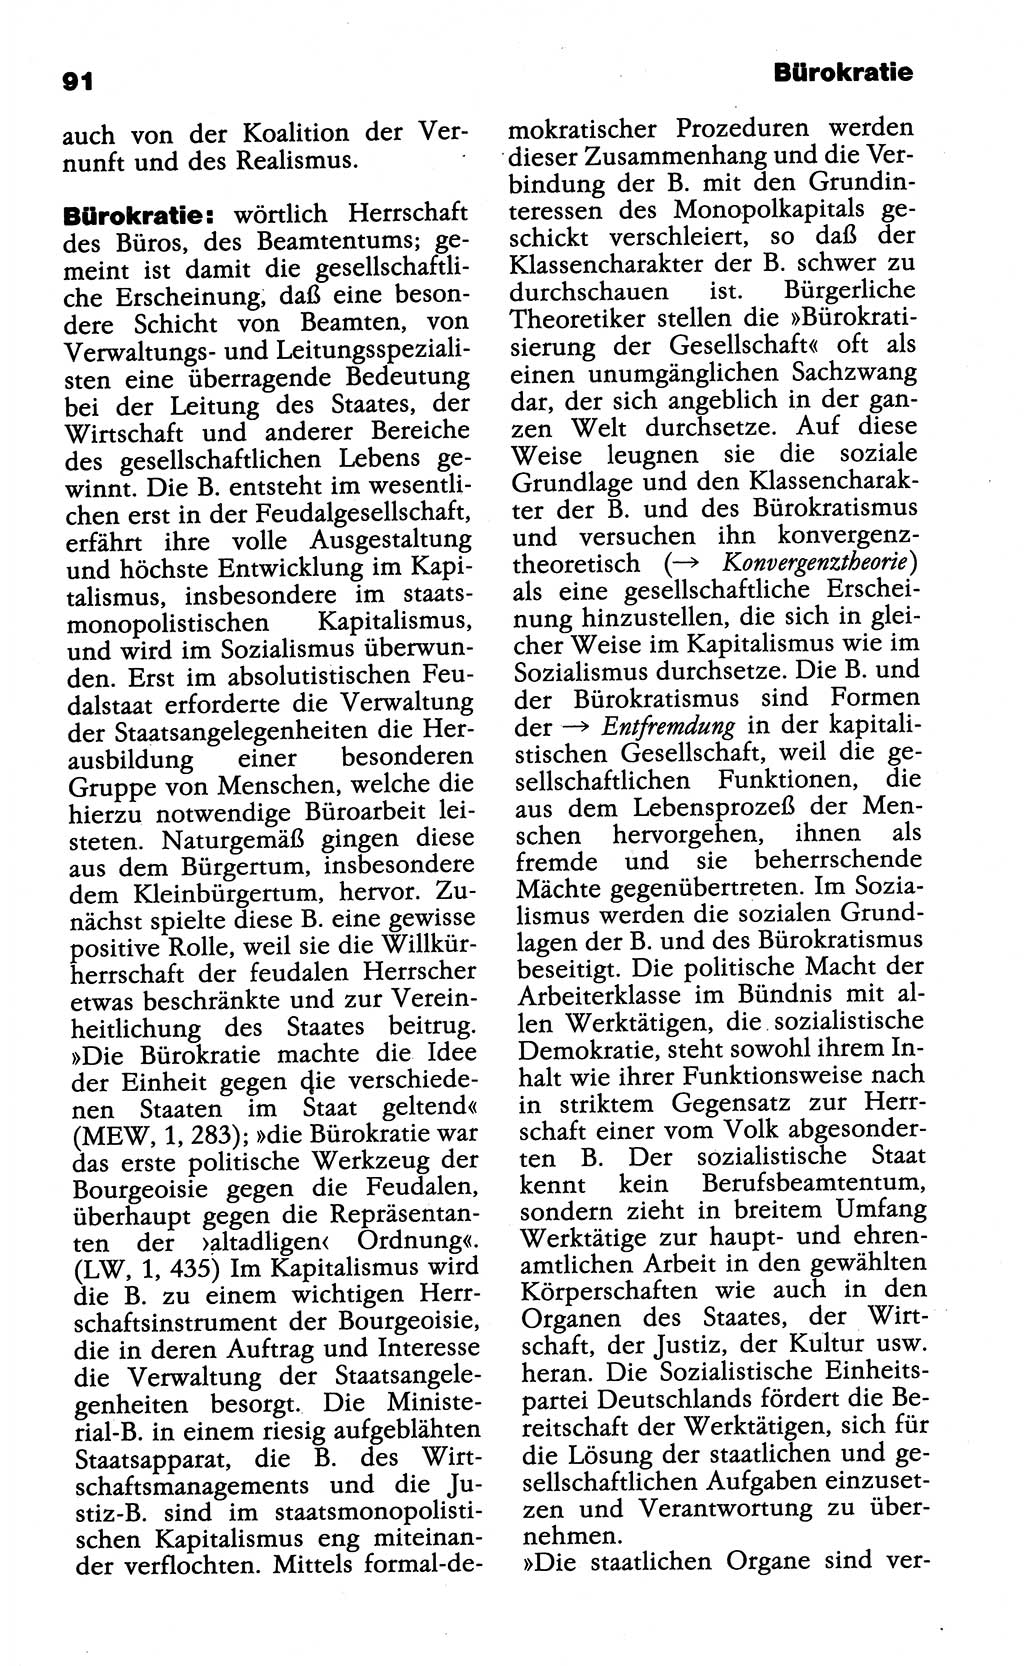 Wörterbuch der marxistisch-leninistischen Philosophie [Deutsche Demokratische Republik (DDR)] 1985, Seite 91 (Wb. ML Phil. DDR 1985, S. 91)